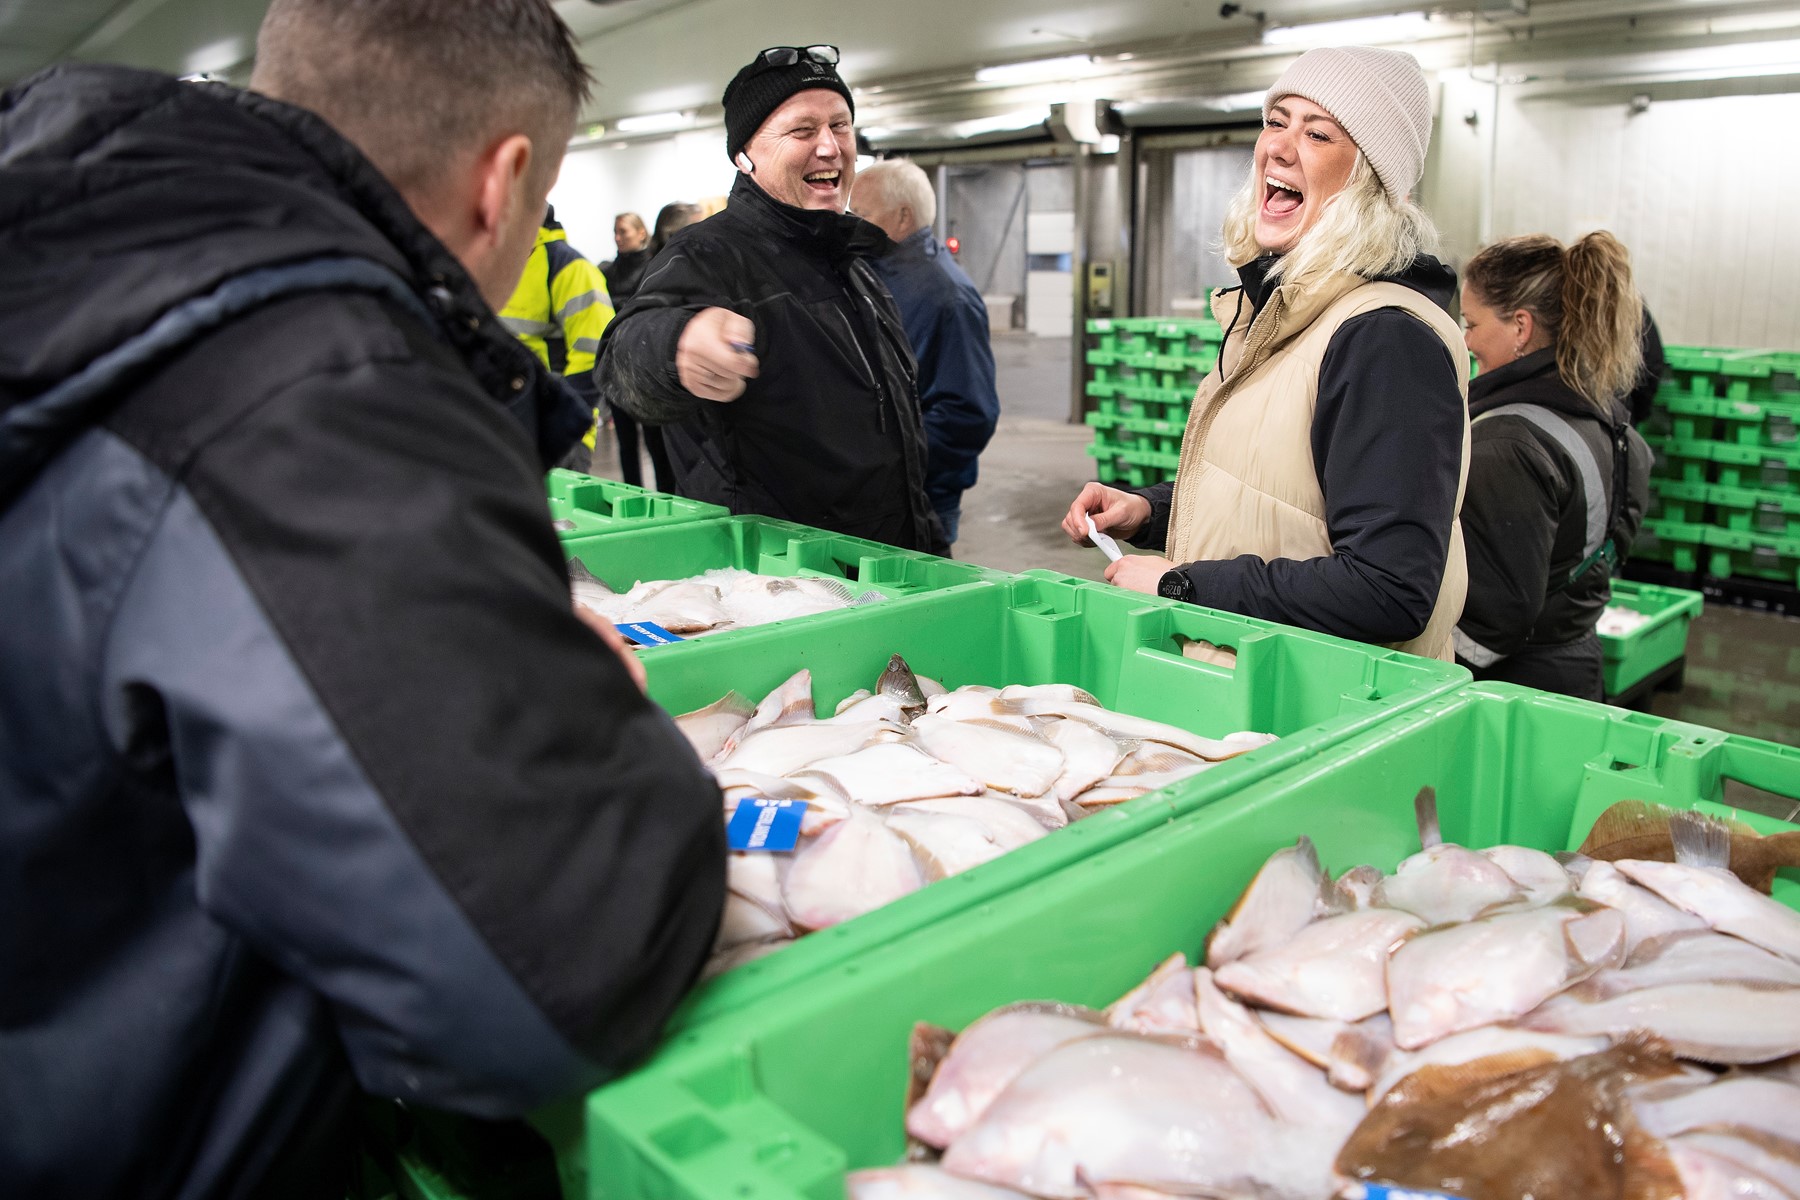 På fiskeauktionen er man koncentreret, men Emilie Kjærgaard forsøger at lette stemningen.  Foto: Claus Søndberg.